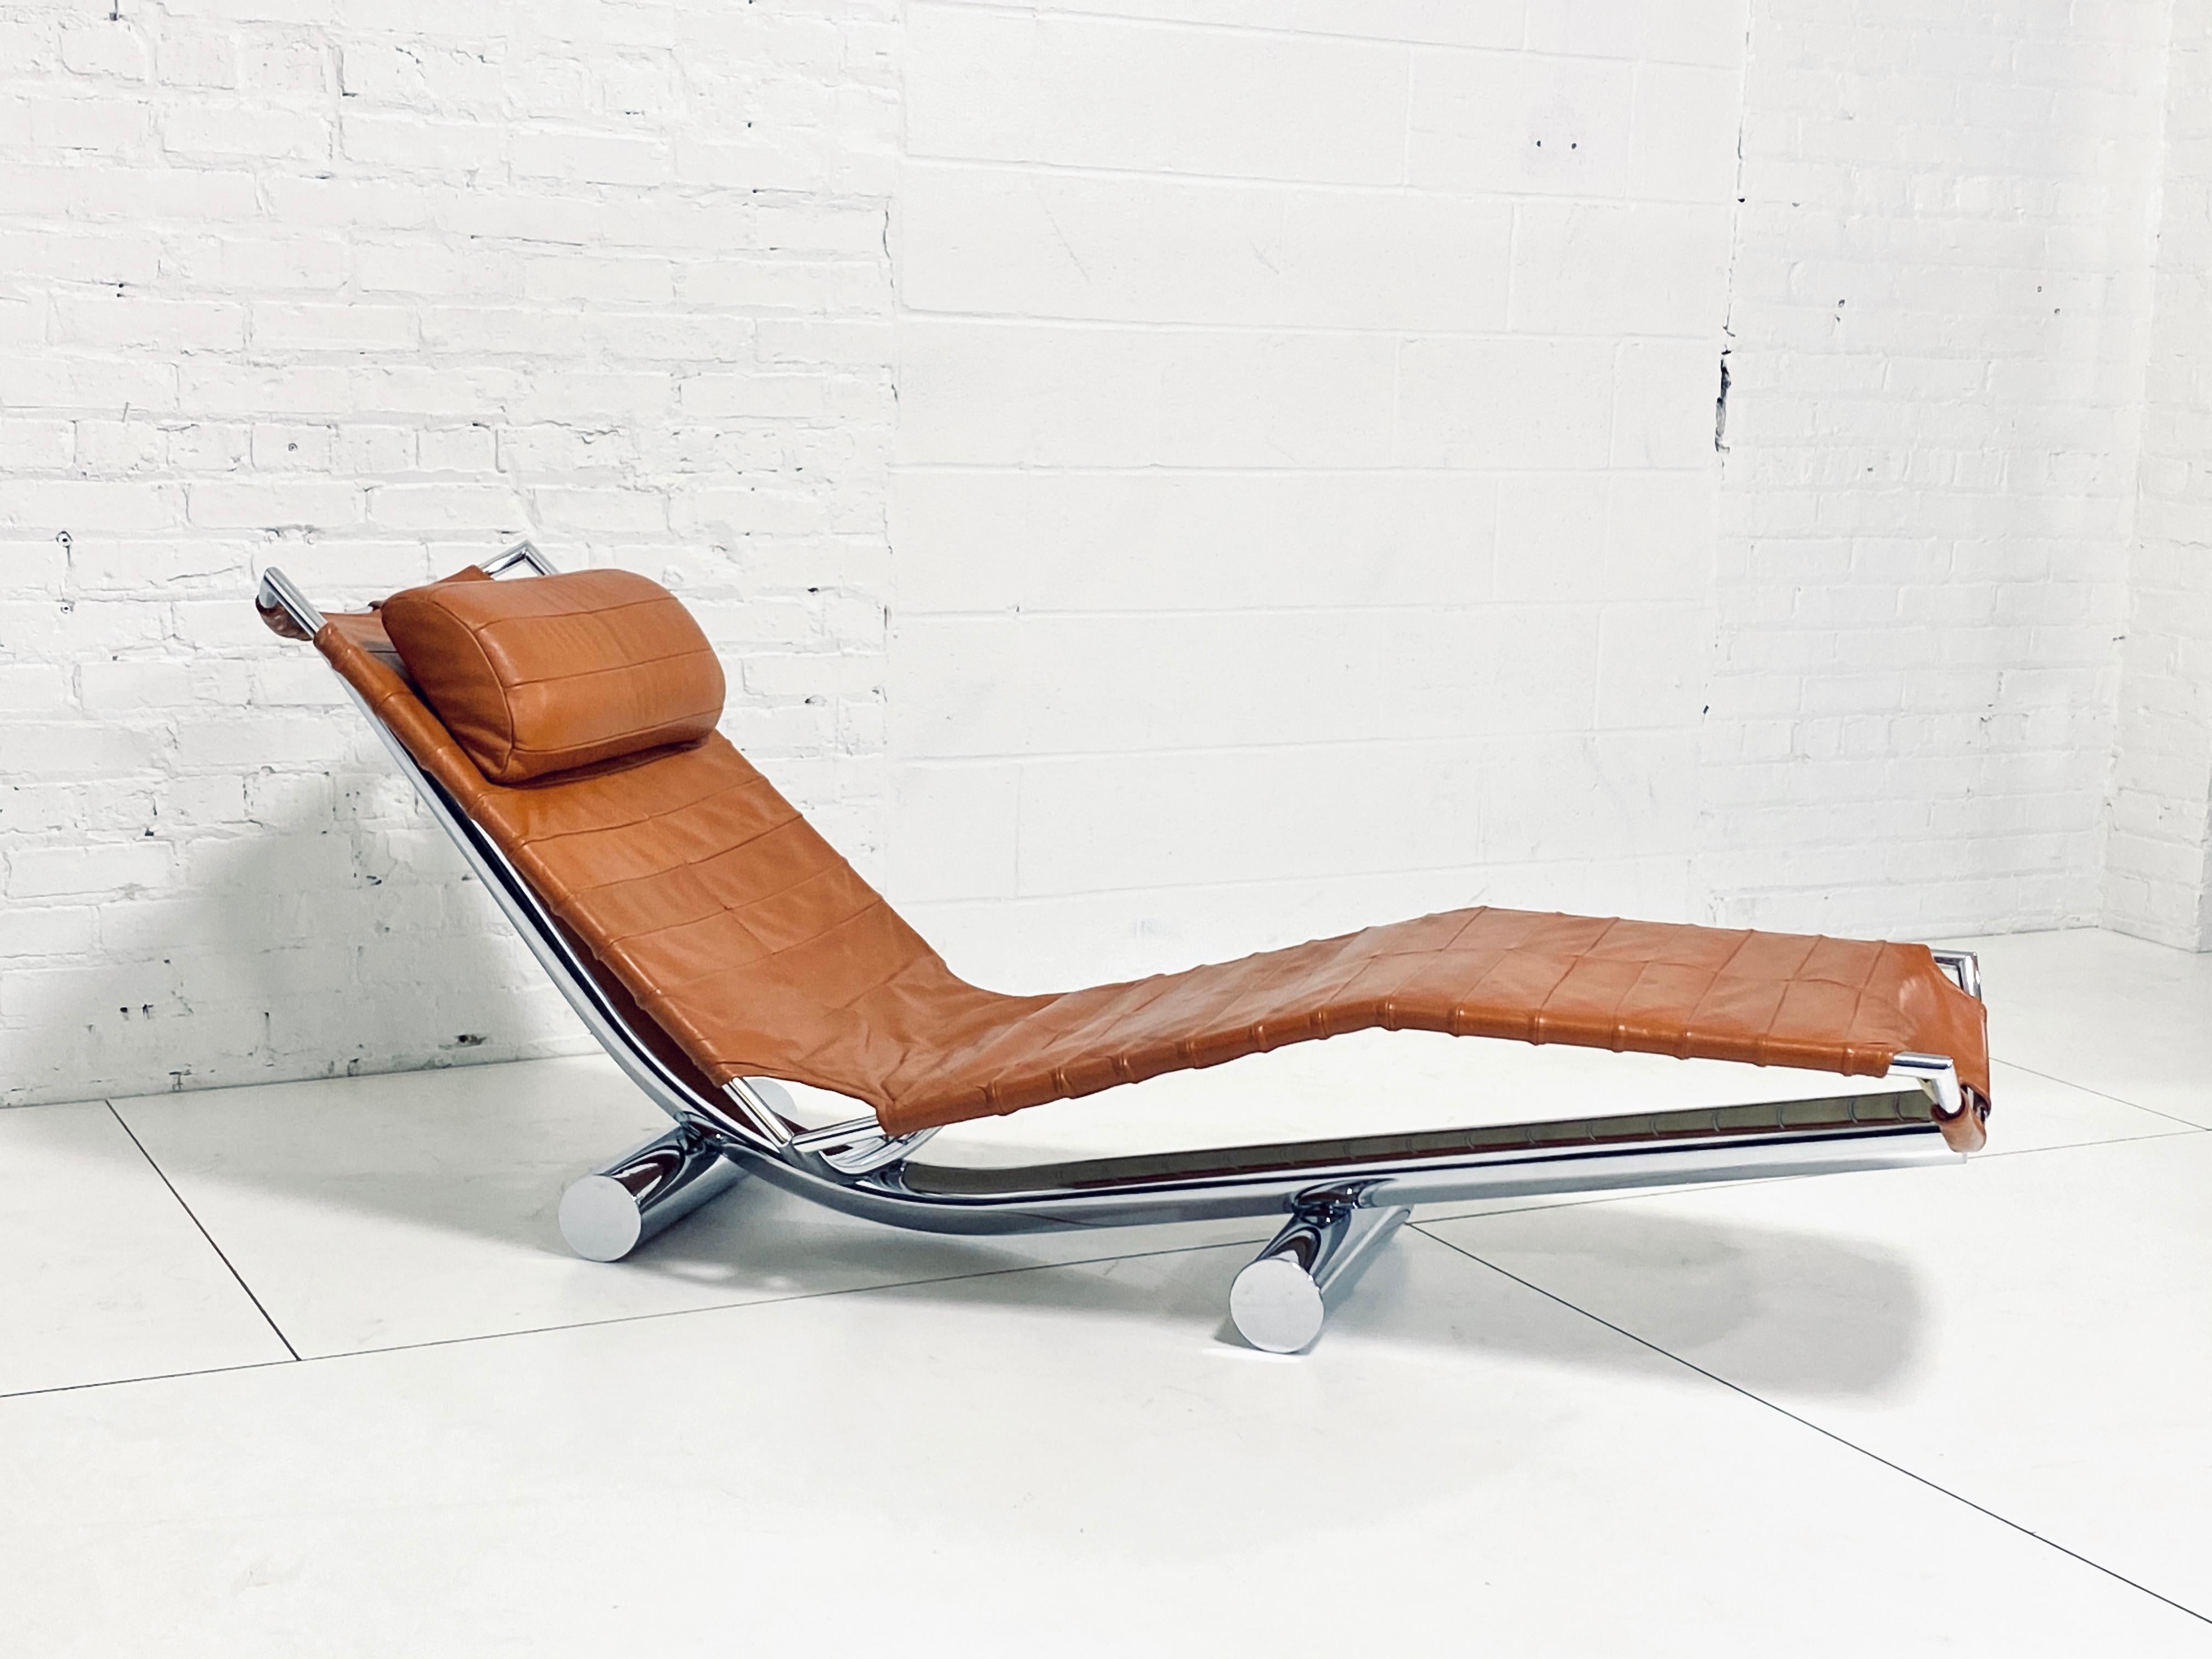 Chaise longue Chariot conçue par Paul Tuttle pour Strassle International. Produit en Suisse en 1972. Le cuir brun camel d'origine et le cadre en chrome poli sont en excellent état.